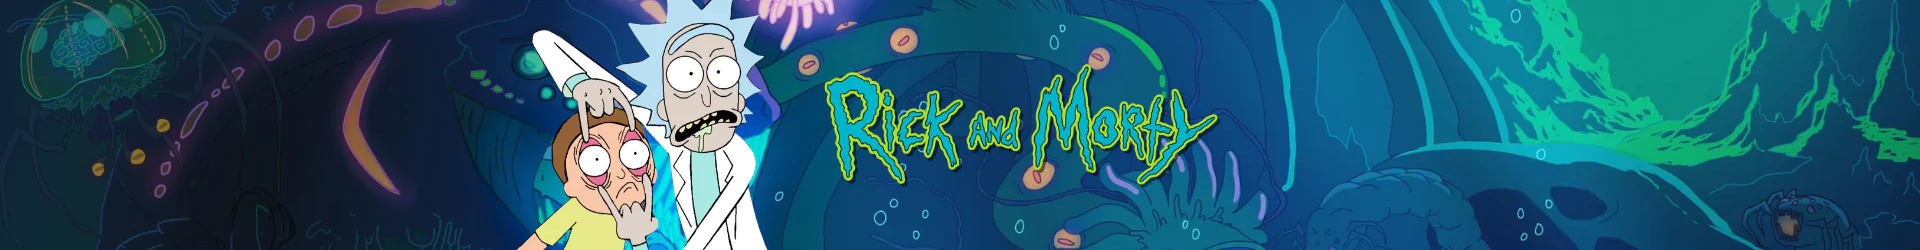 Rick és Morty füzetek banner